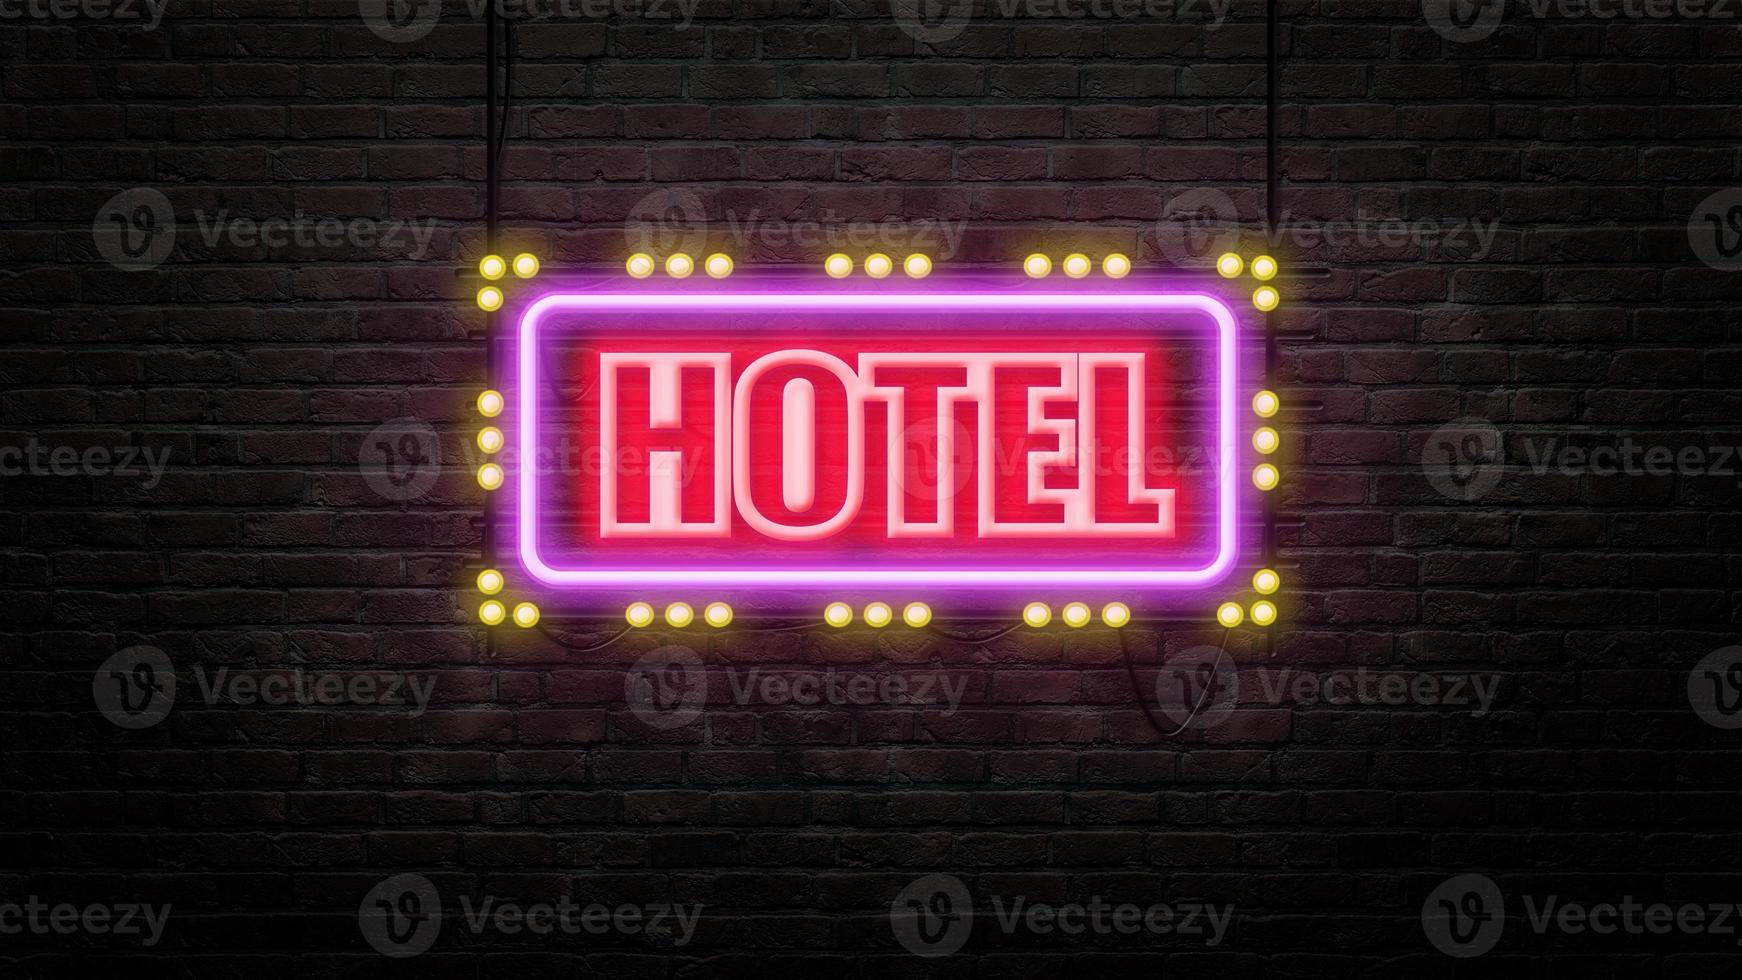 emblème de l'enseigne de l'hôtel dans un style néon sur fond de mur de briques photo